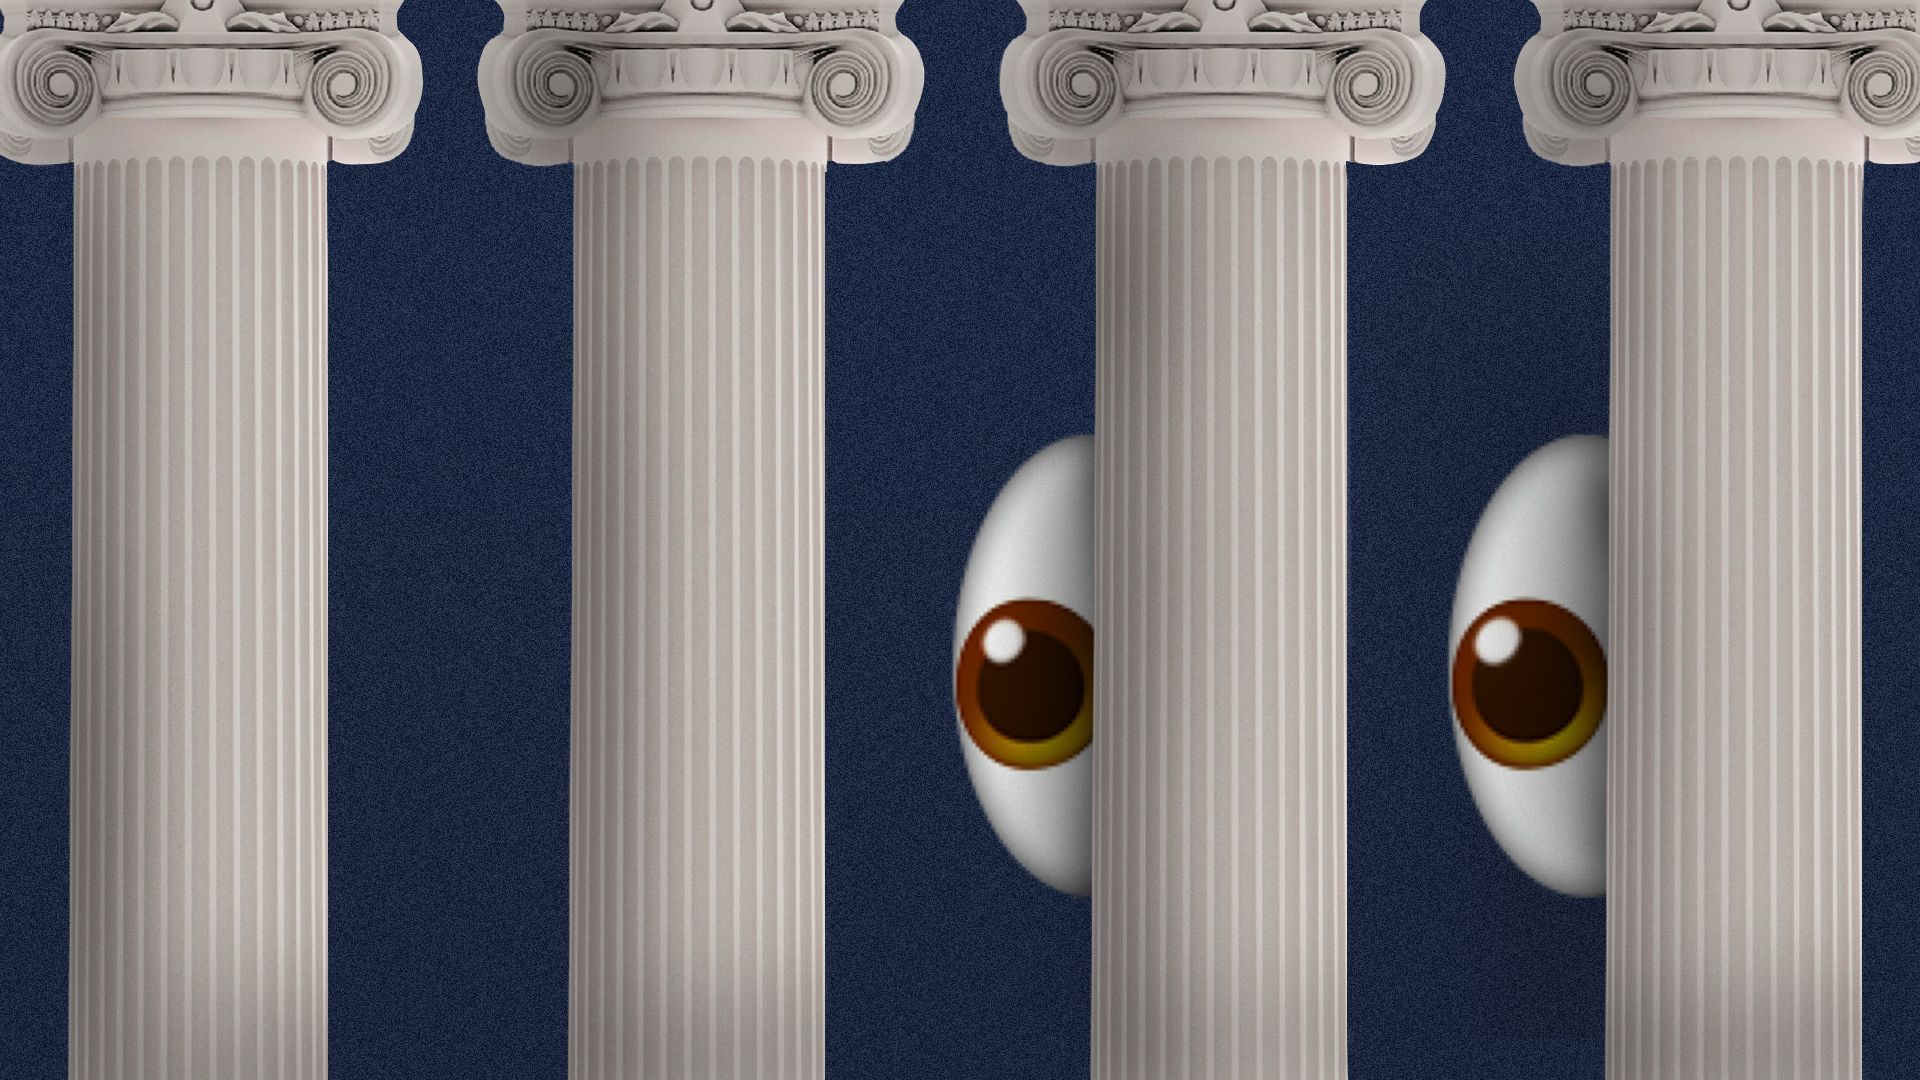 emoji eyes peeking out from behind roman columns 